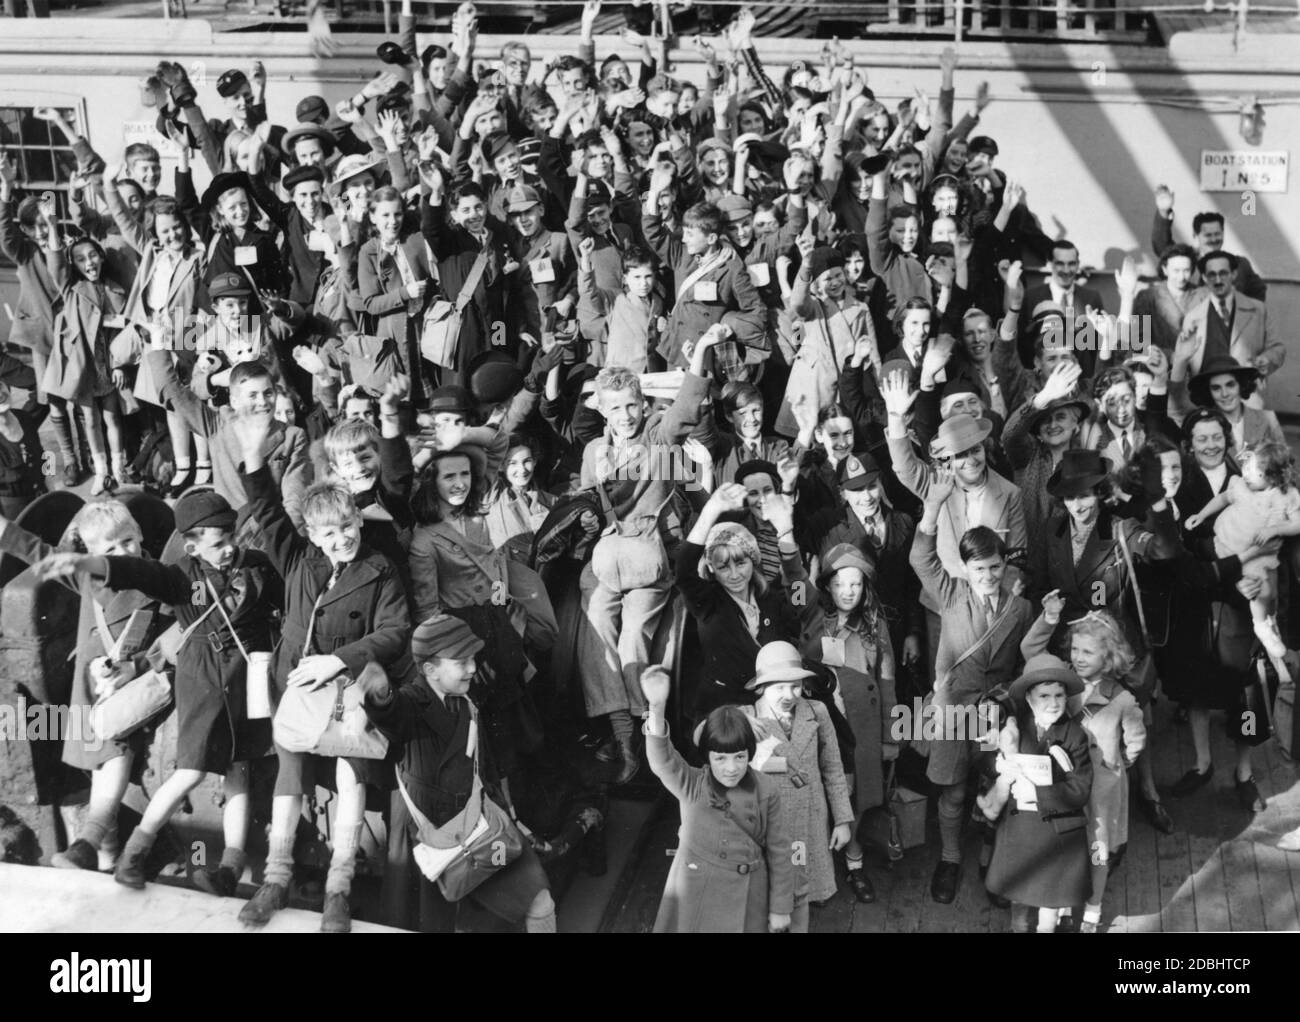 'Englische Kinder, die auf dem Flug von einer möglichen Invasion Großbritanniens im Zweiten Weltkrieg in die USA evakuiert wurden Welle auf Deck der ''S.S. Samaria'' bei ihrer Ankunft in New York City.' Stockfoto